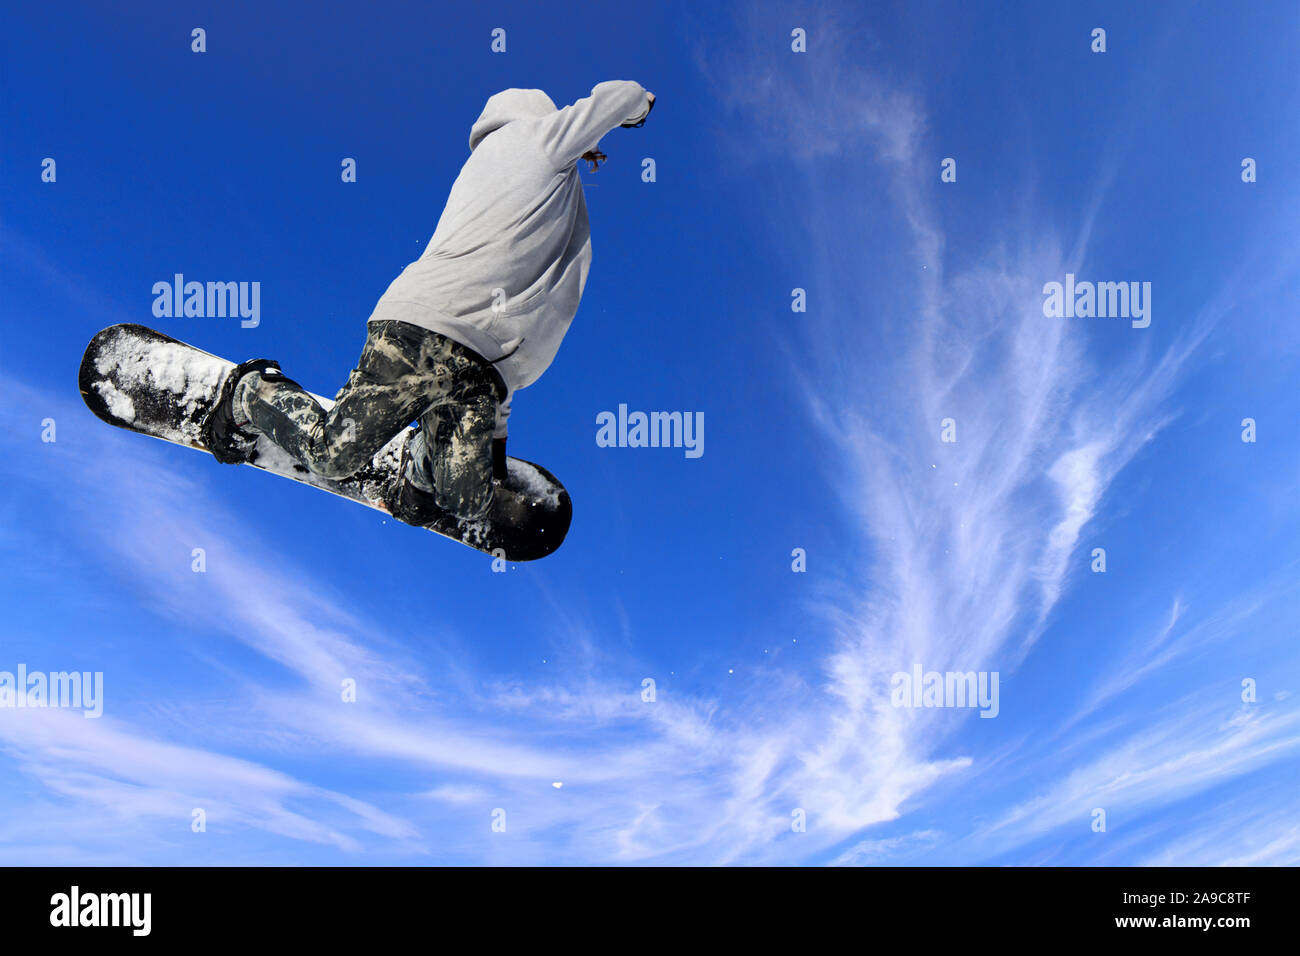 Skifahrer, Snowboarder, springen durch die Luft mit blauen Himmel im Hintergrund Stockfoto